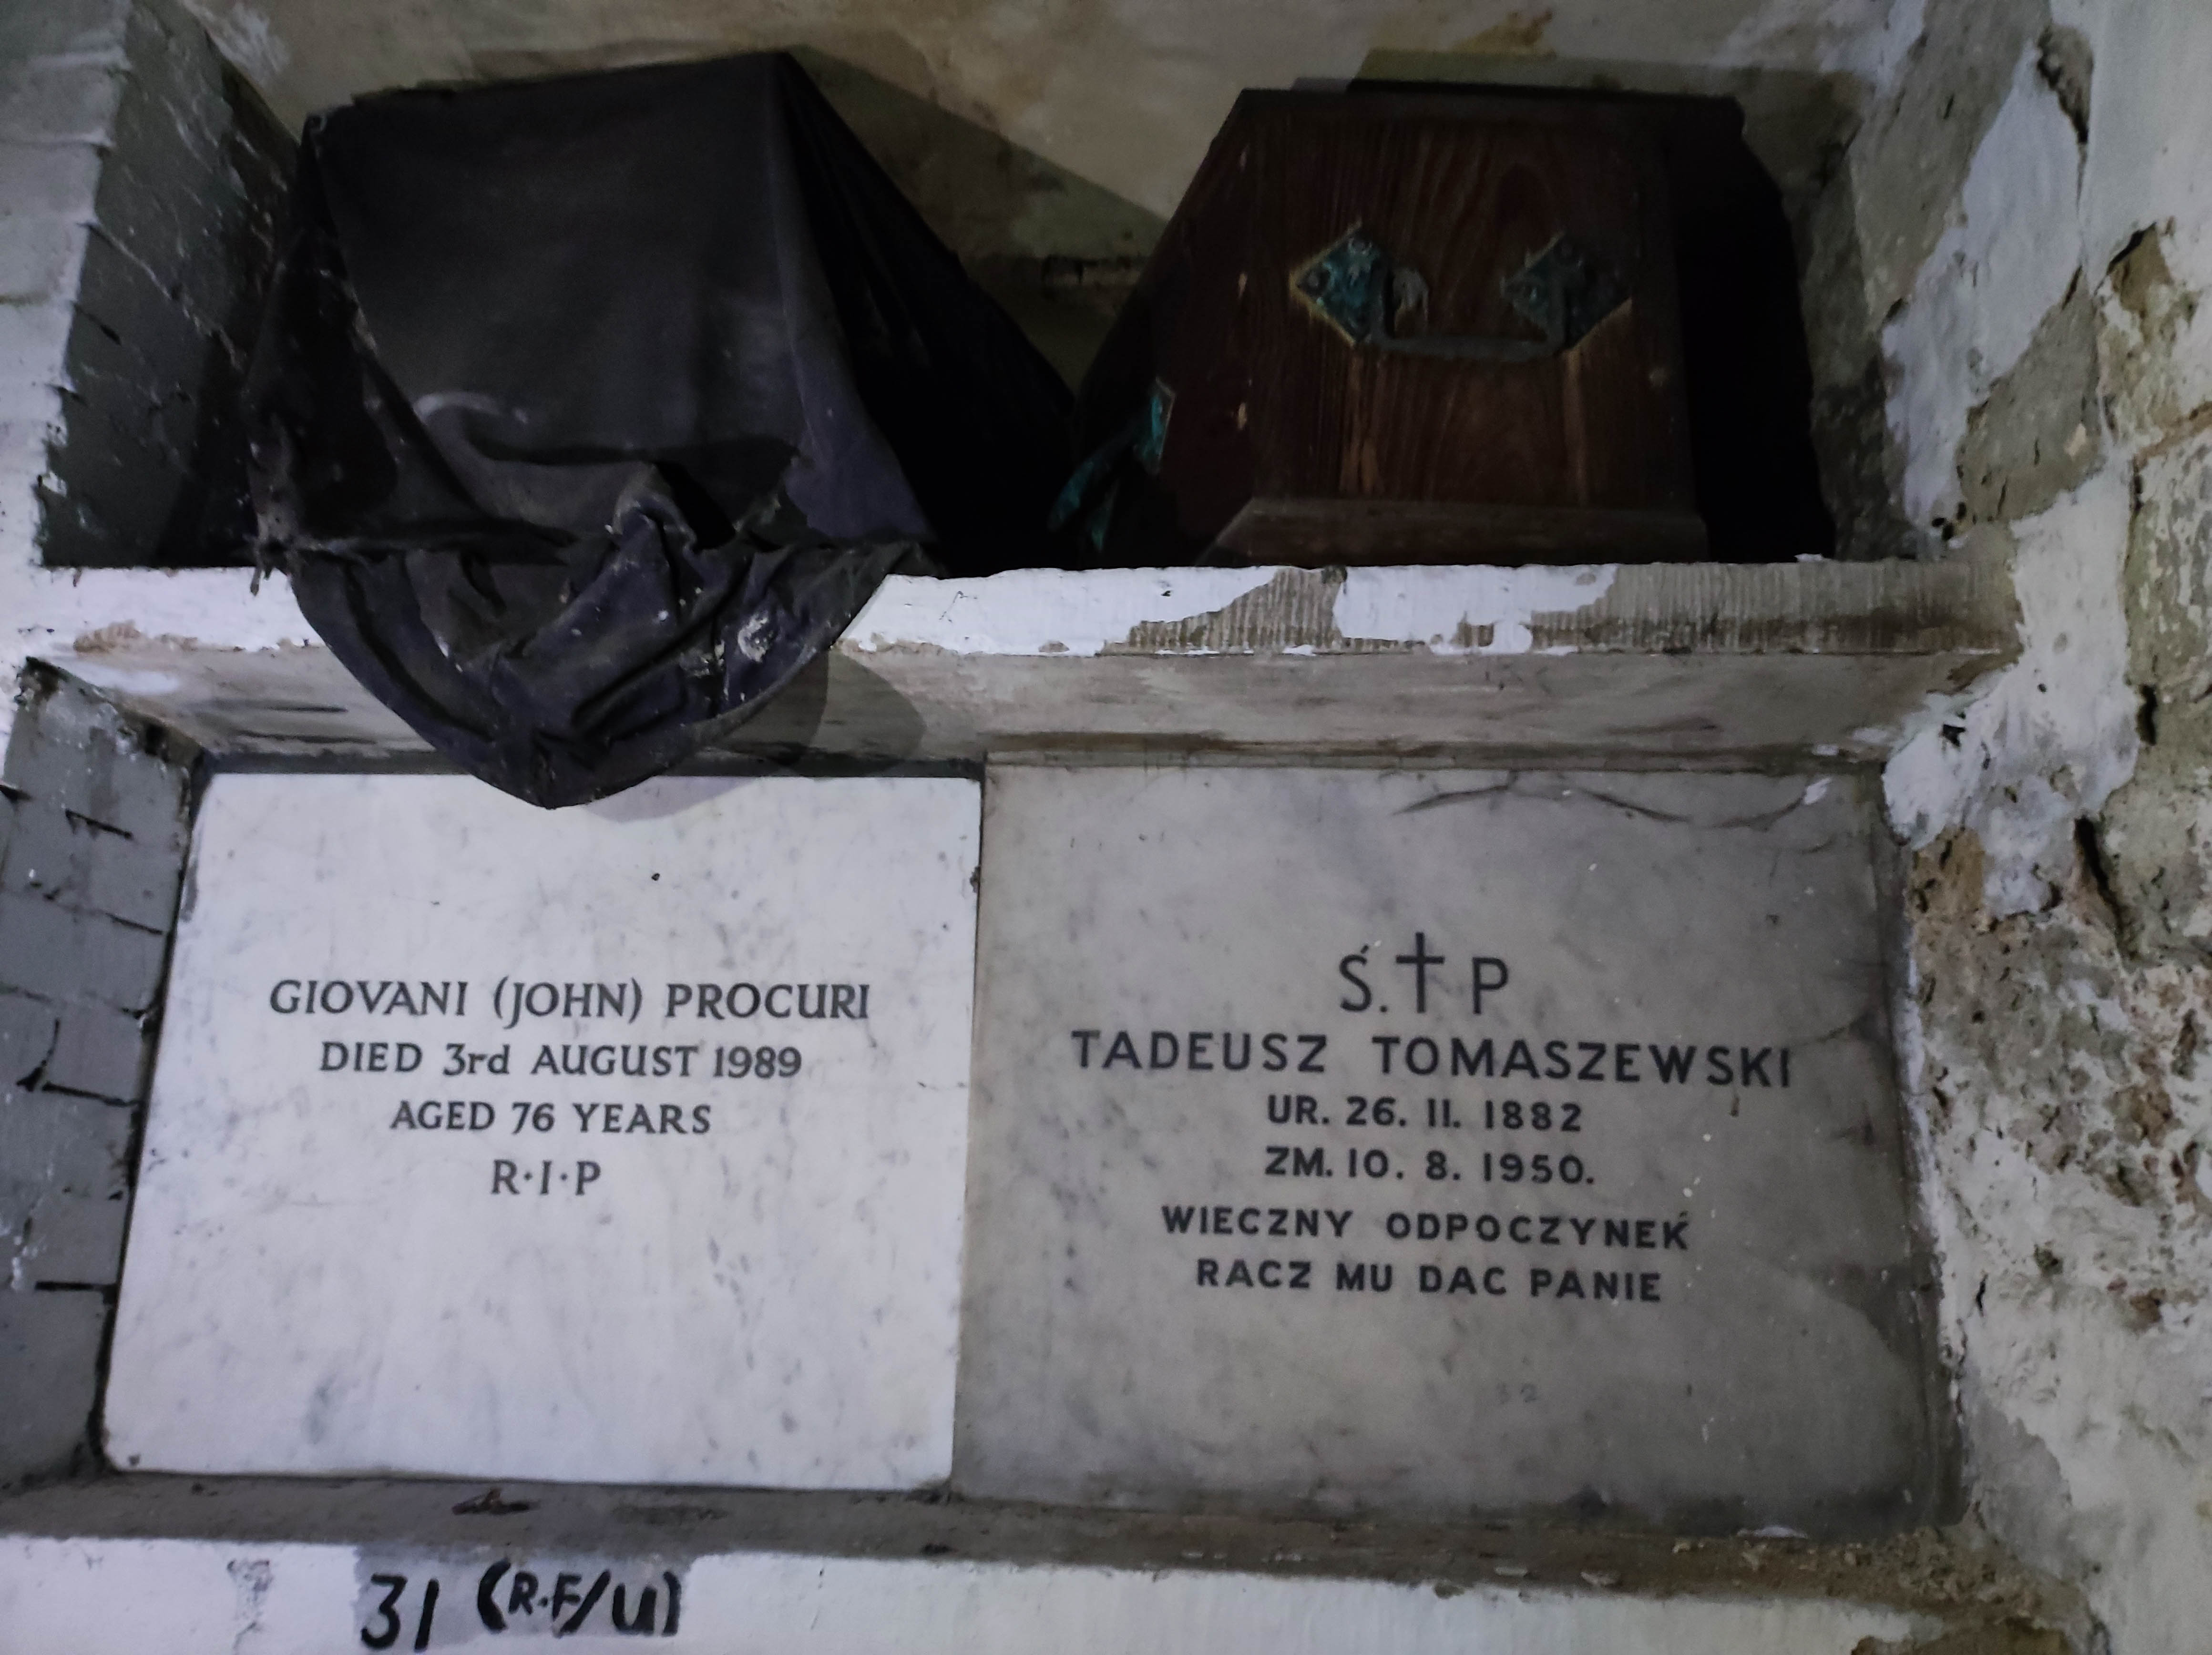 Burial of Tadeusz Tomaszewski